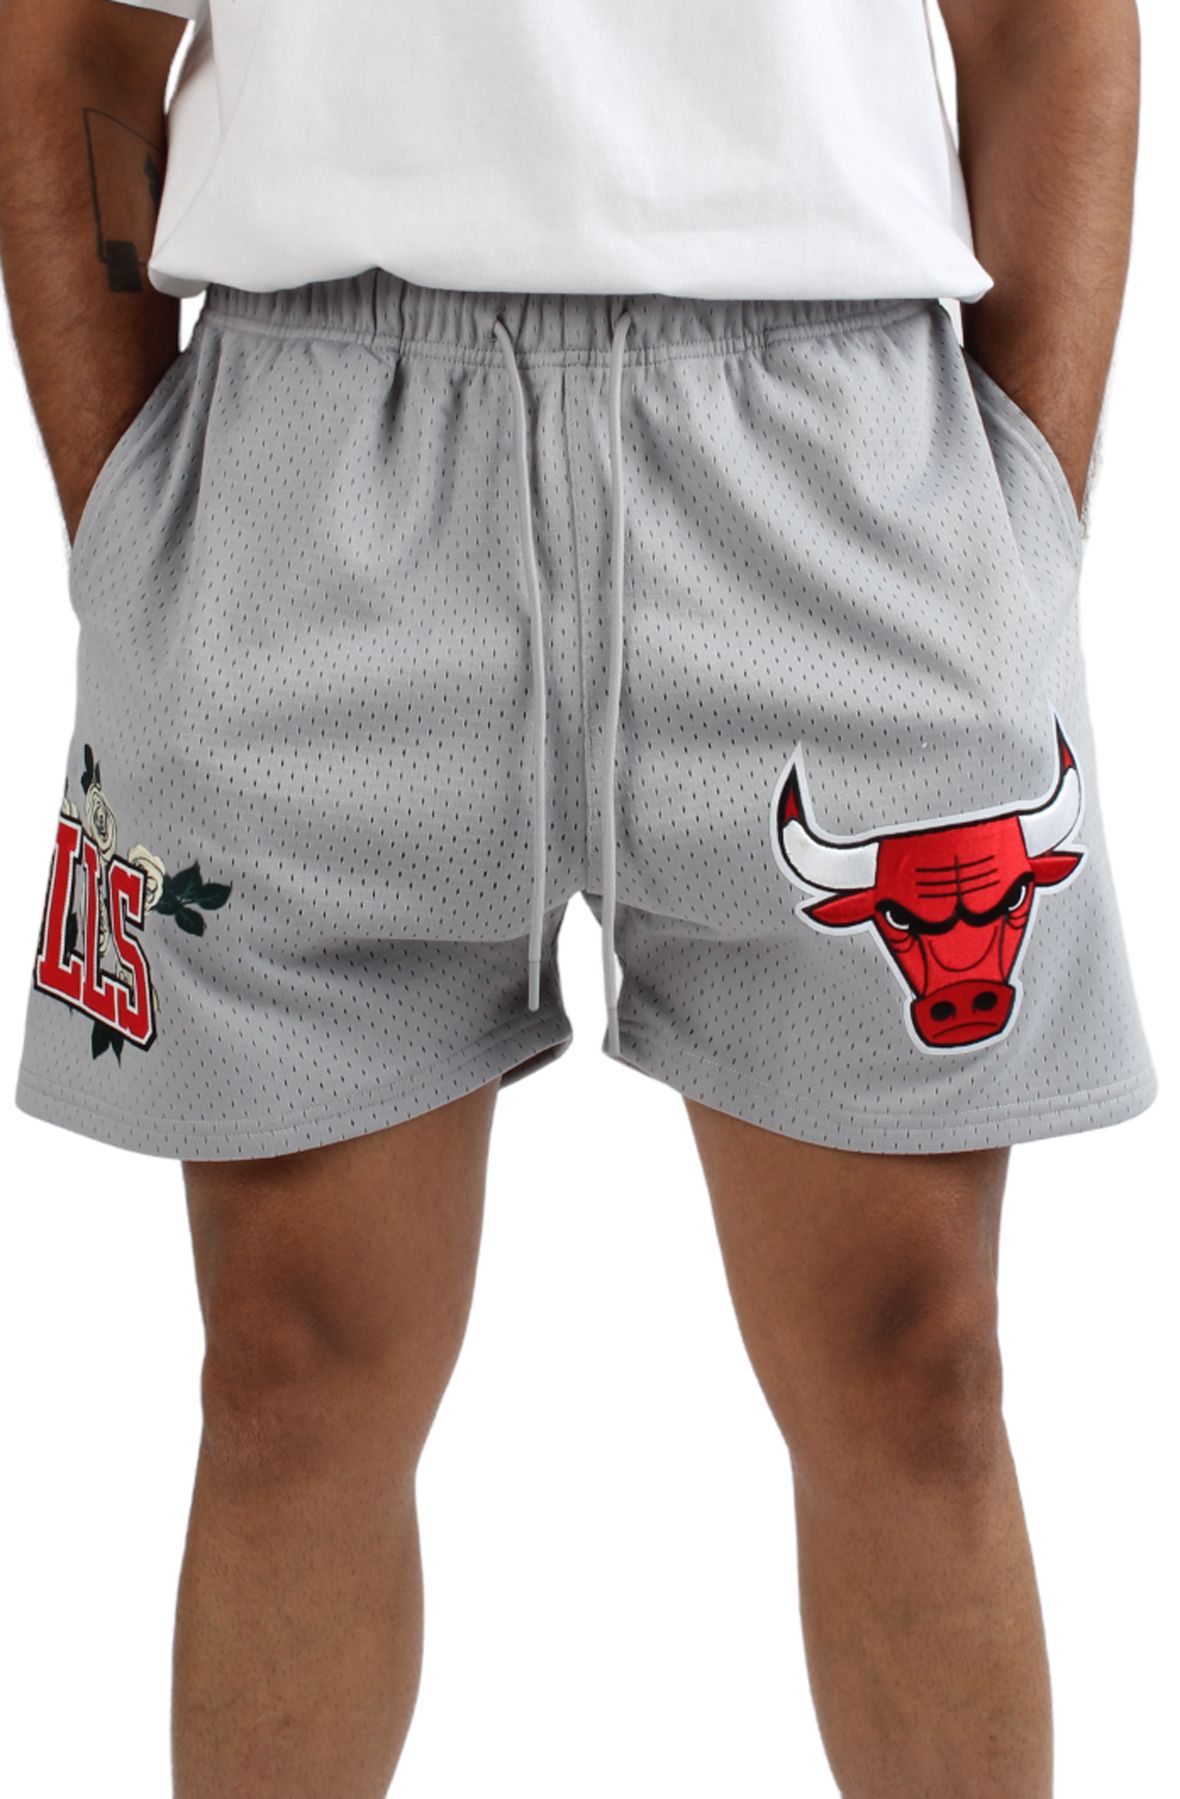 chicago bulls grey shorts